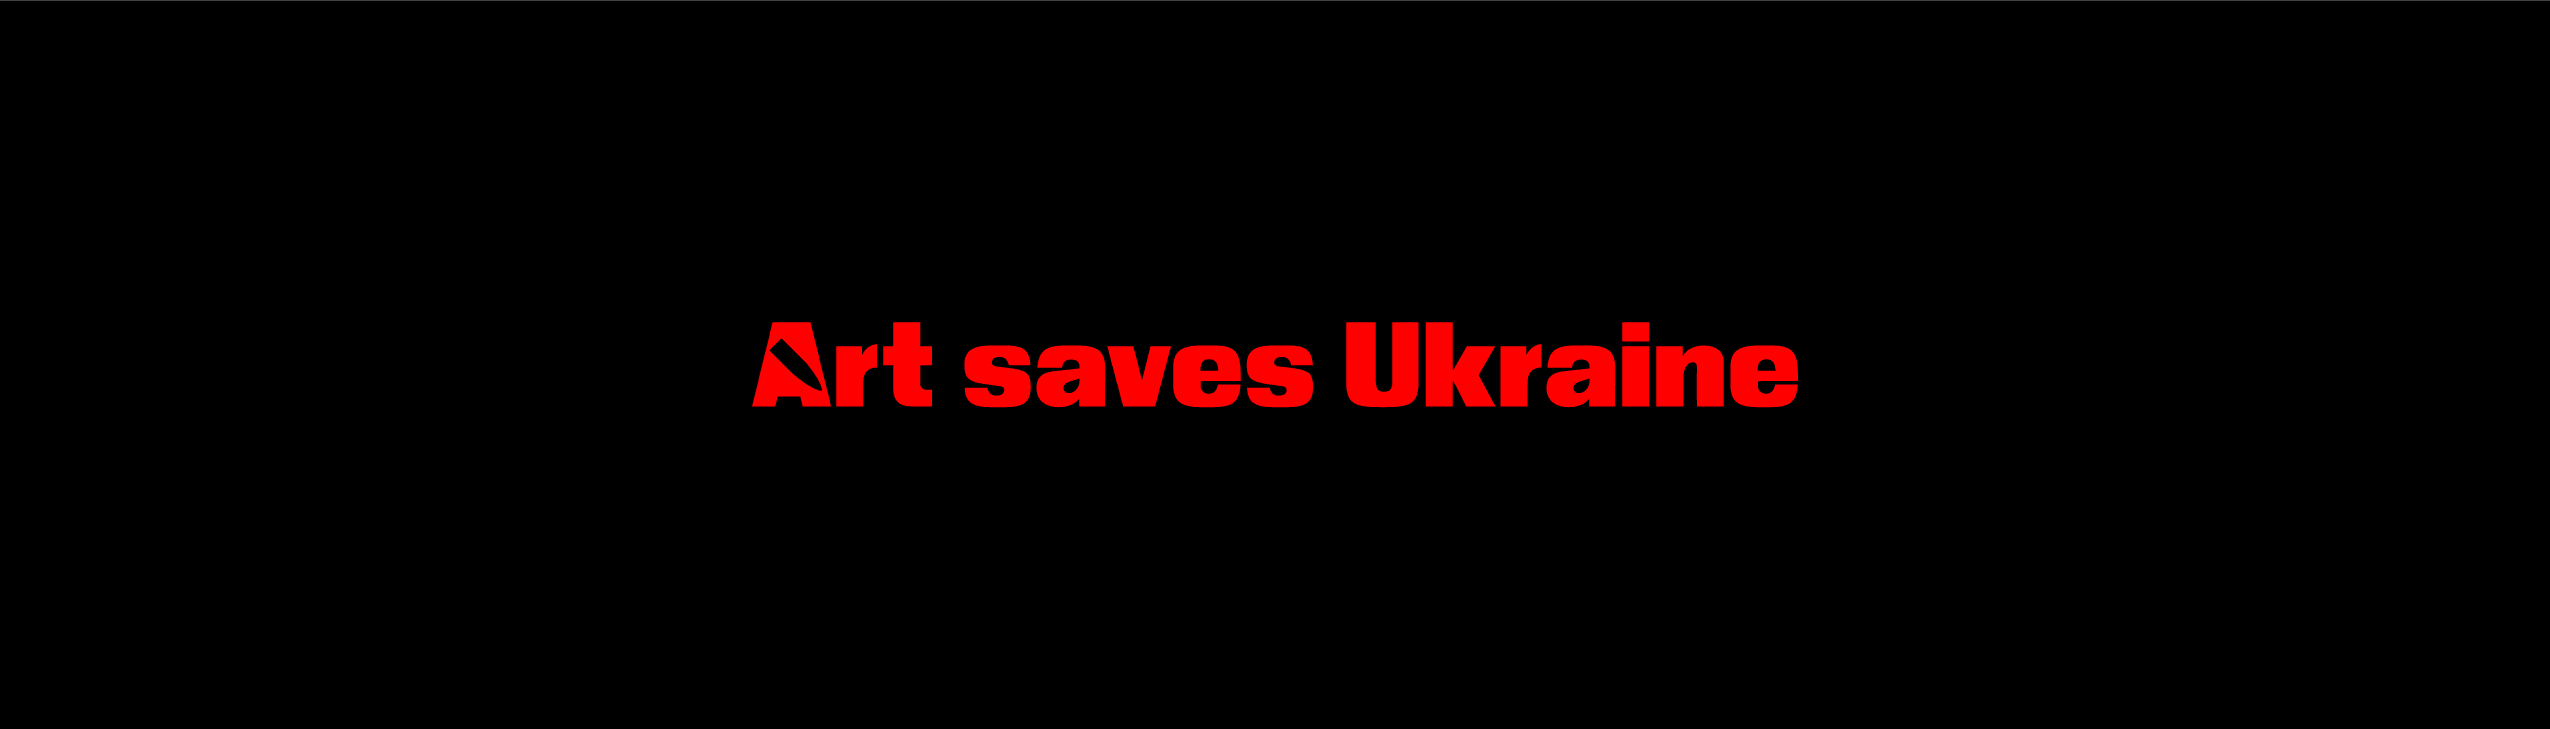 UKRART banner